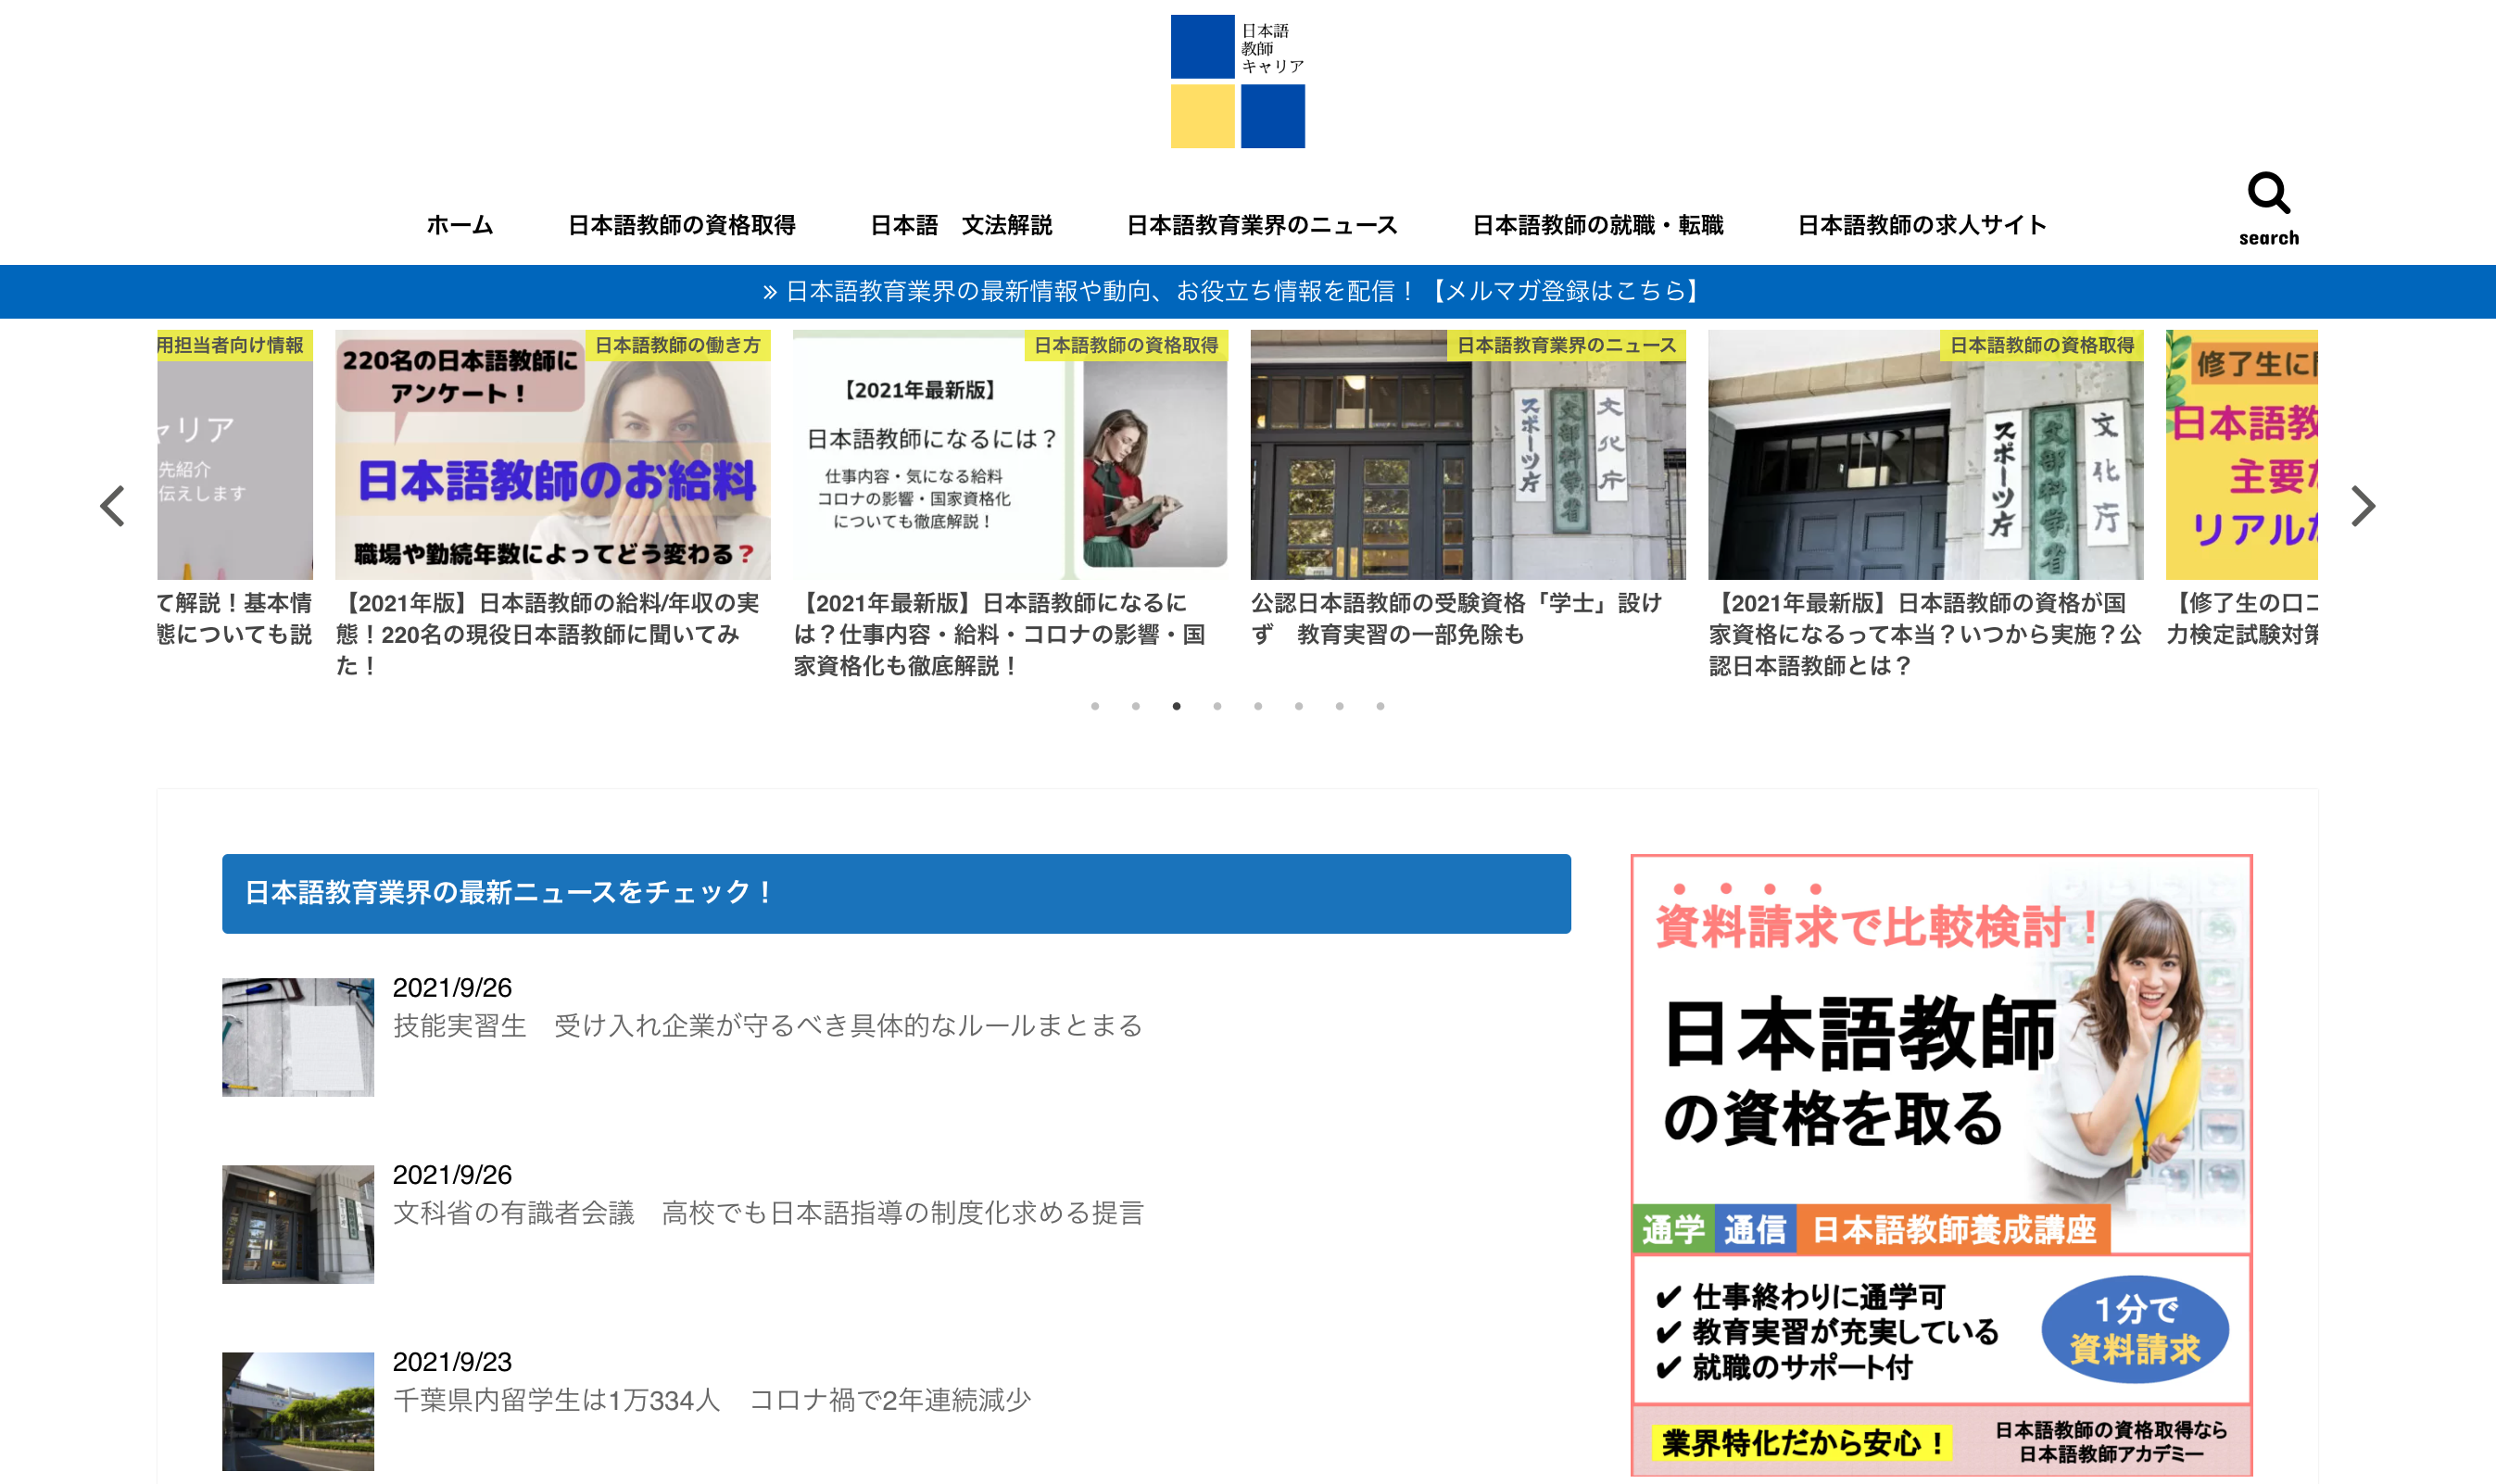 日本語教育に関する情報を発信するメディア 日本語教師キャリア マガジン が月間10万pvを達成 Reboot Japan株式会社のプレスリリース